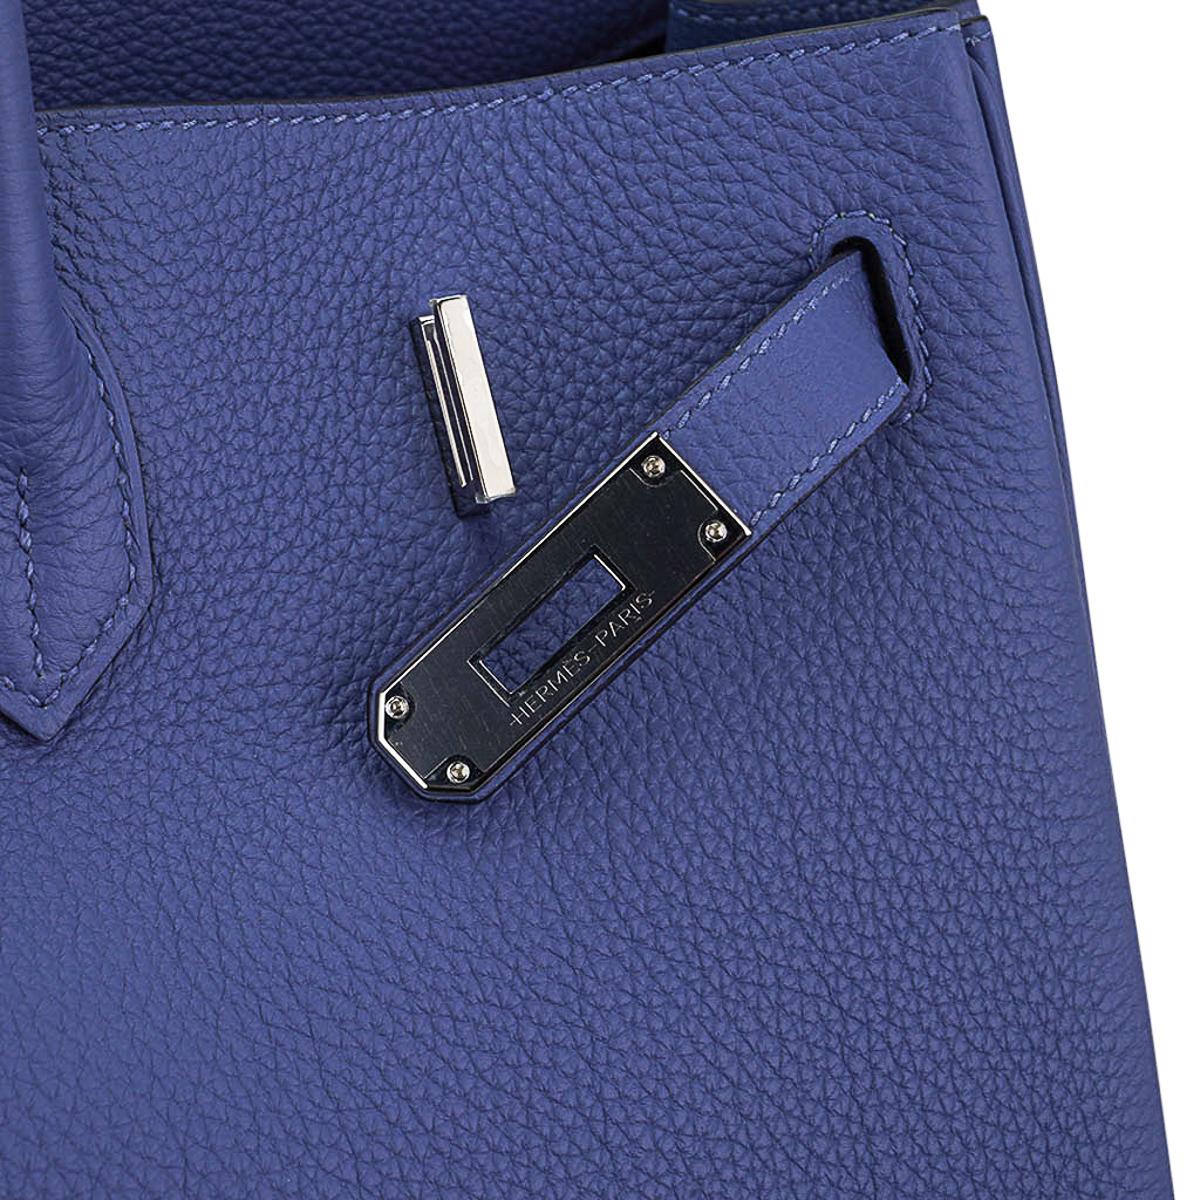 Hermes Birkin 40 Bag Blue de Prusse Palladium Hardware Togo Leather For Sale 1